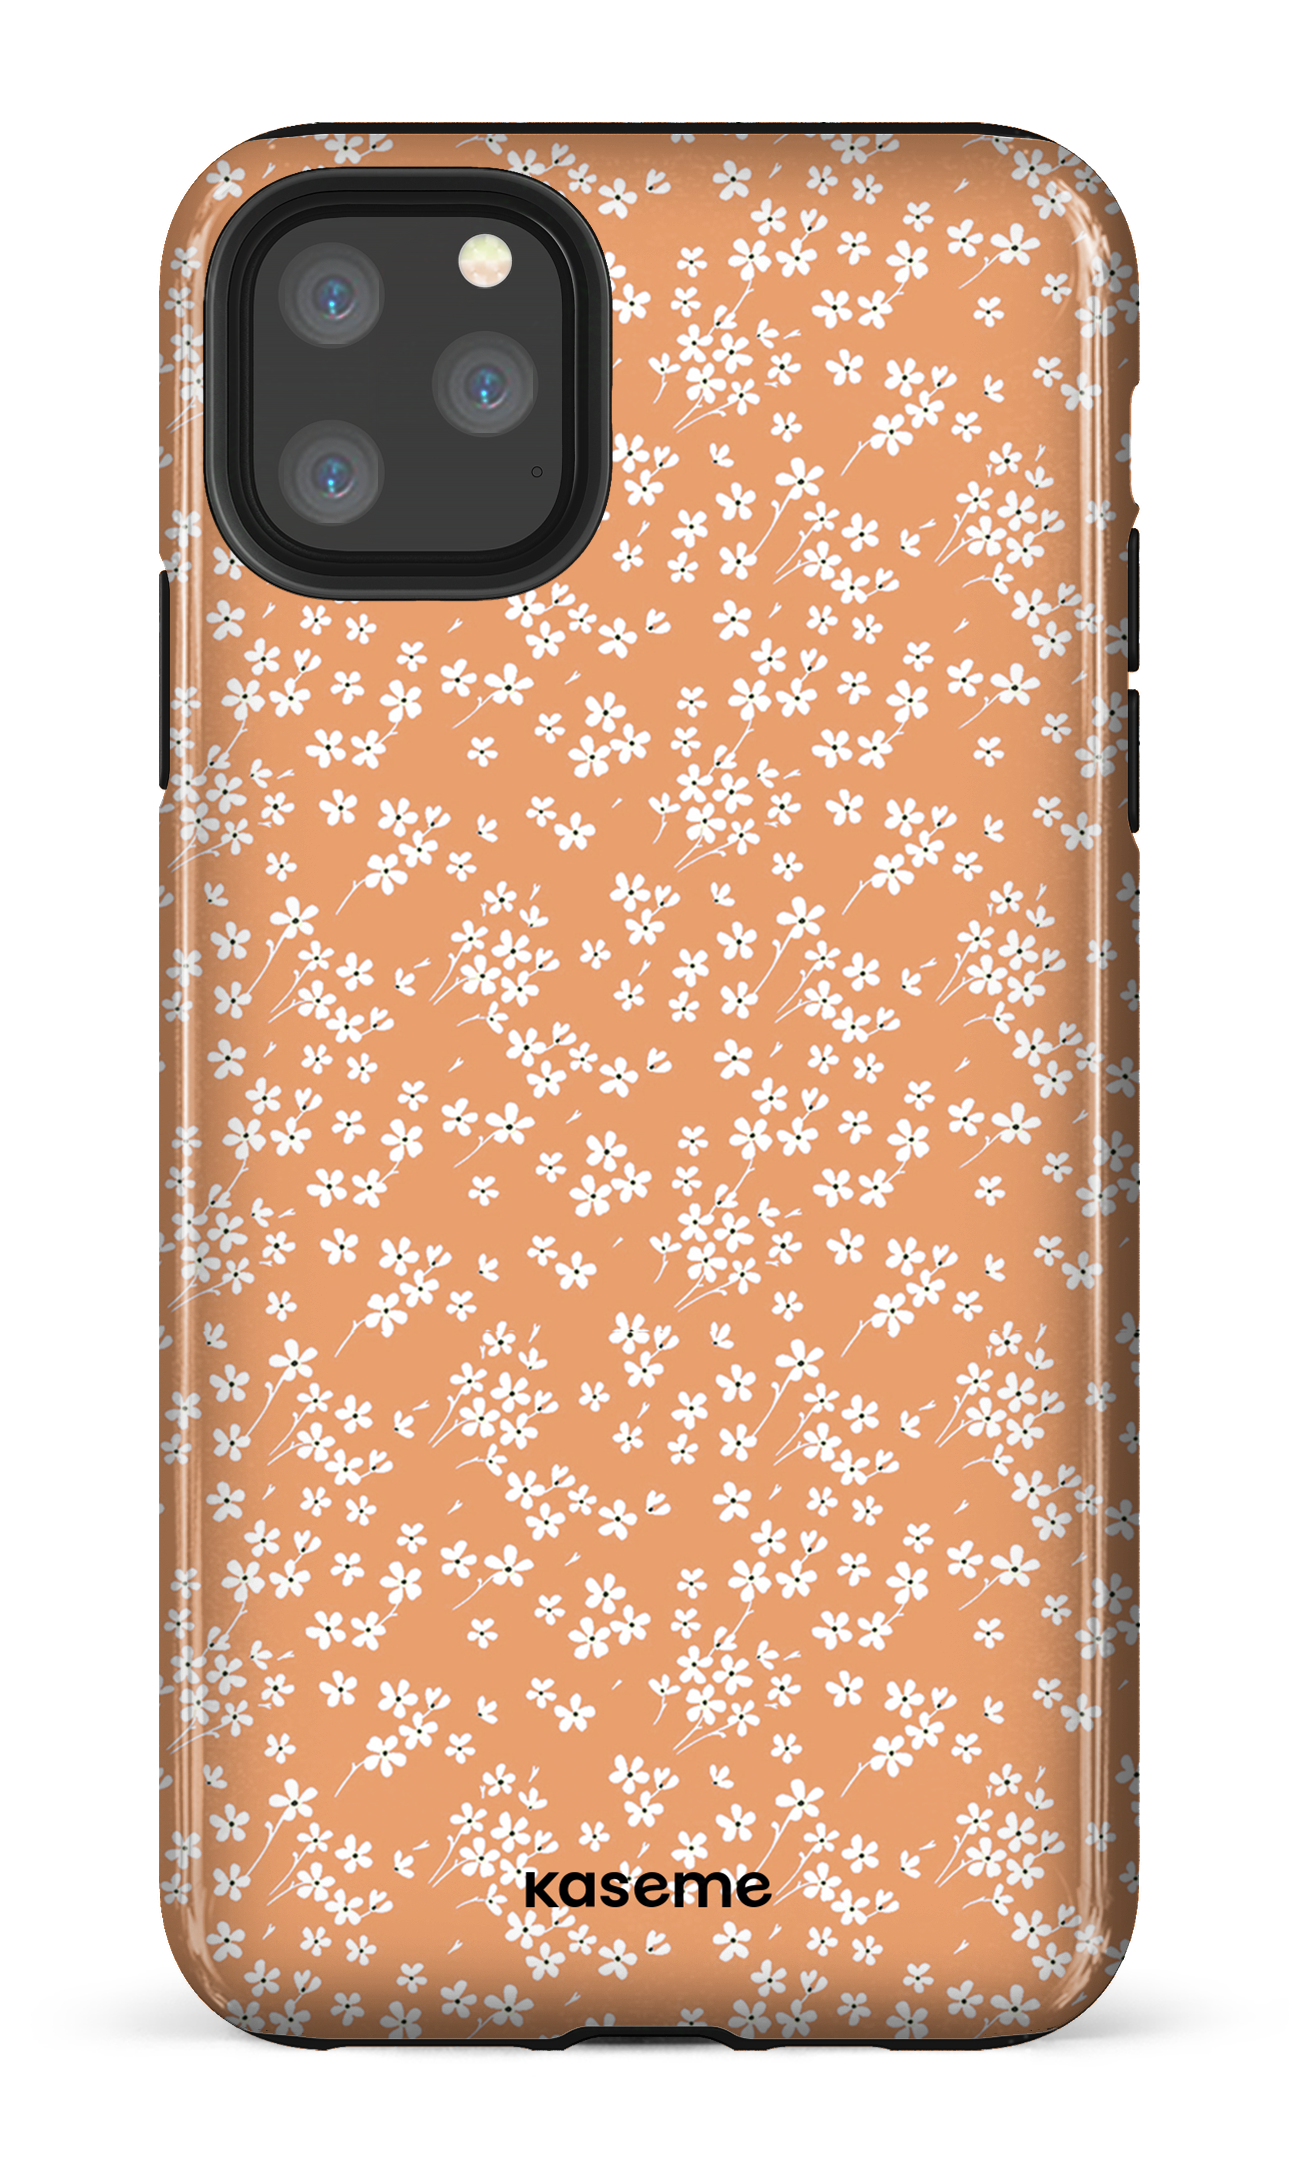 Posy orange - iPhone 11 Pro Max